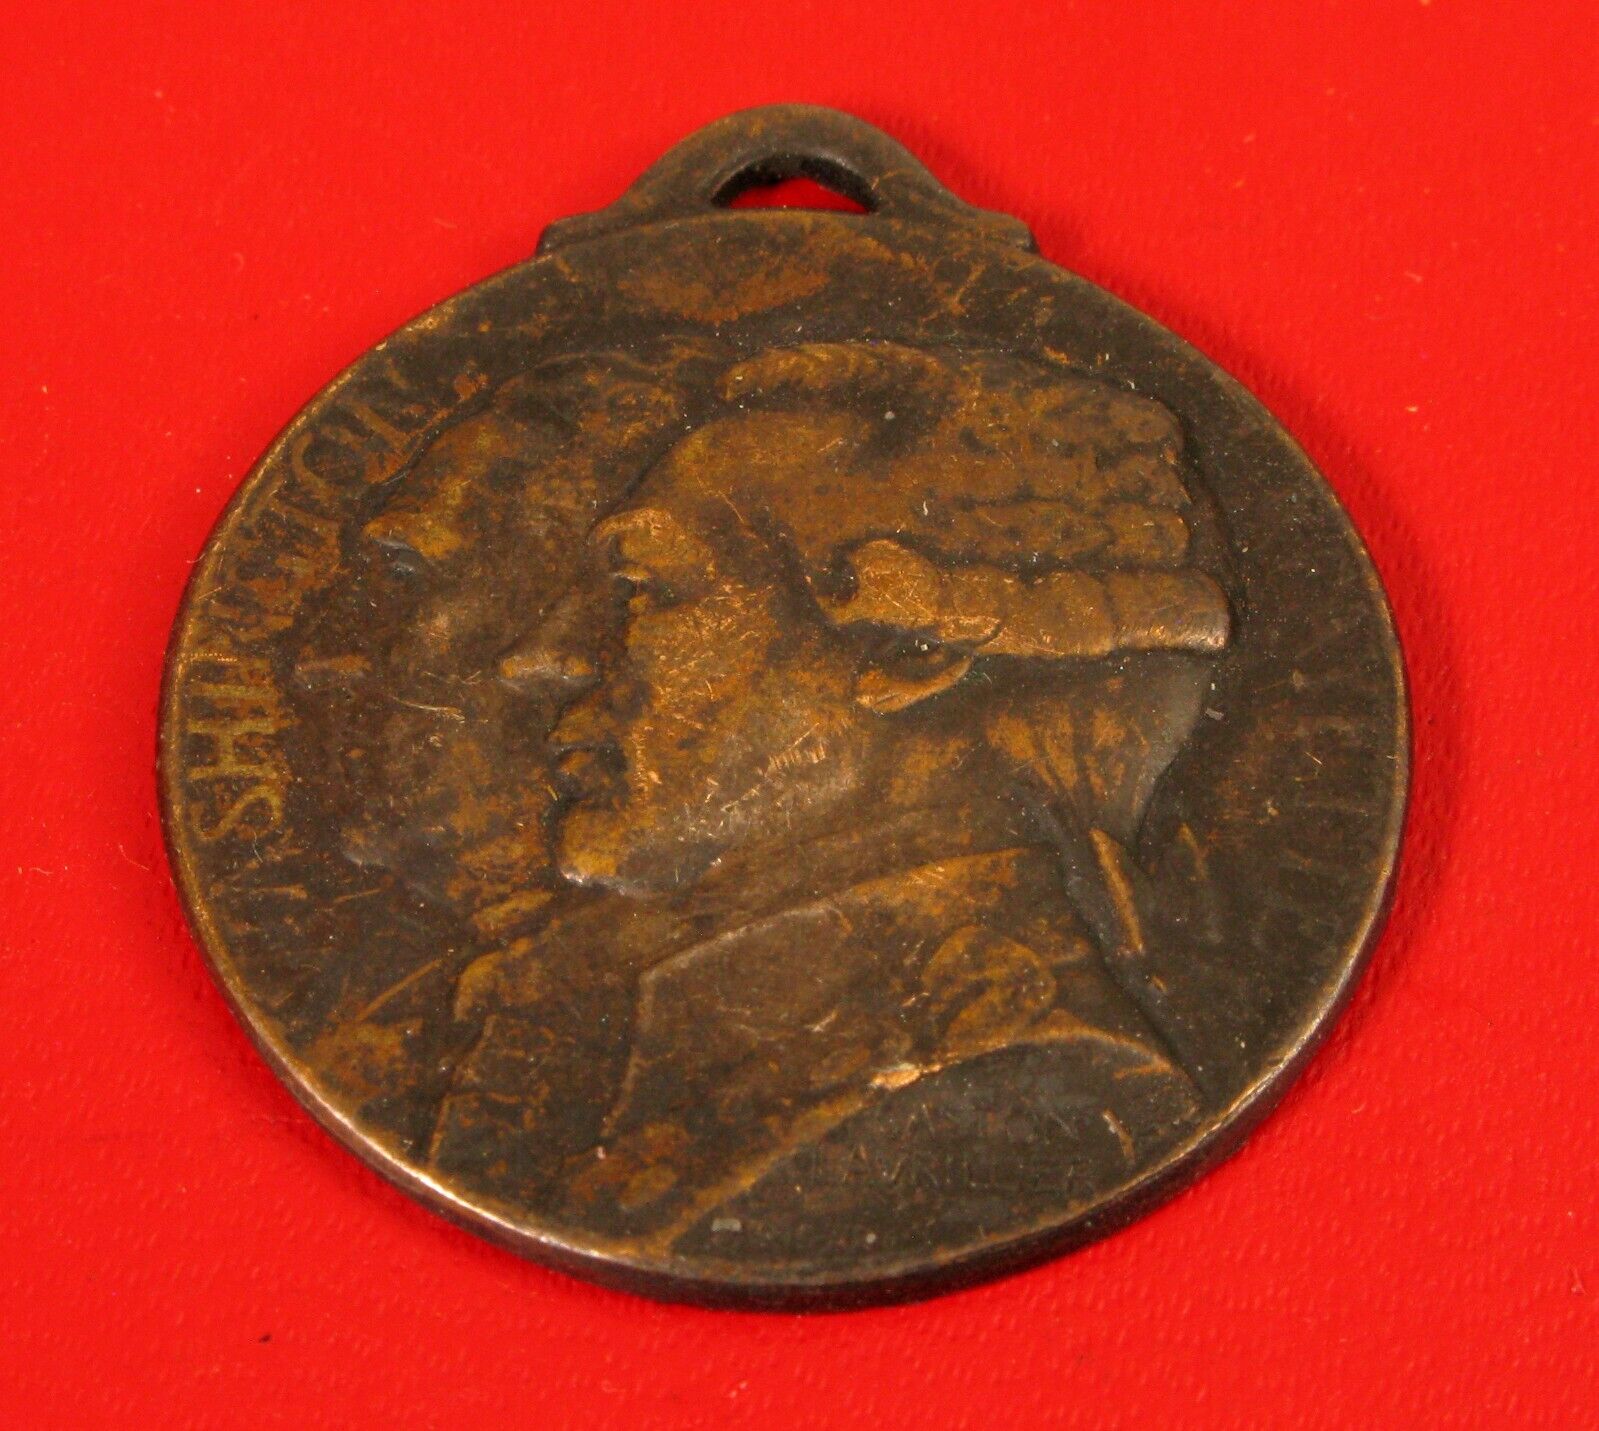 Antique Medal - Journée de Paris 1917 GEORGE WASHINGTON GENERAL LAFAYETTE RARE 